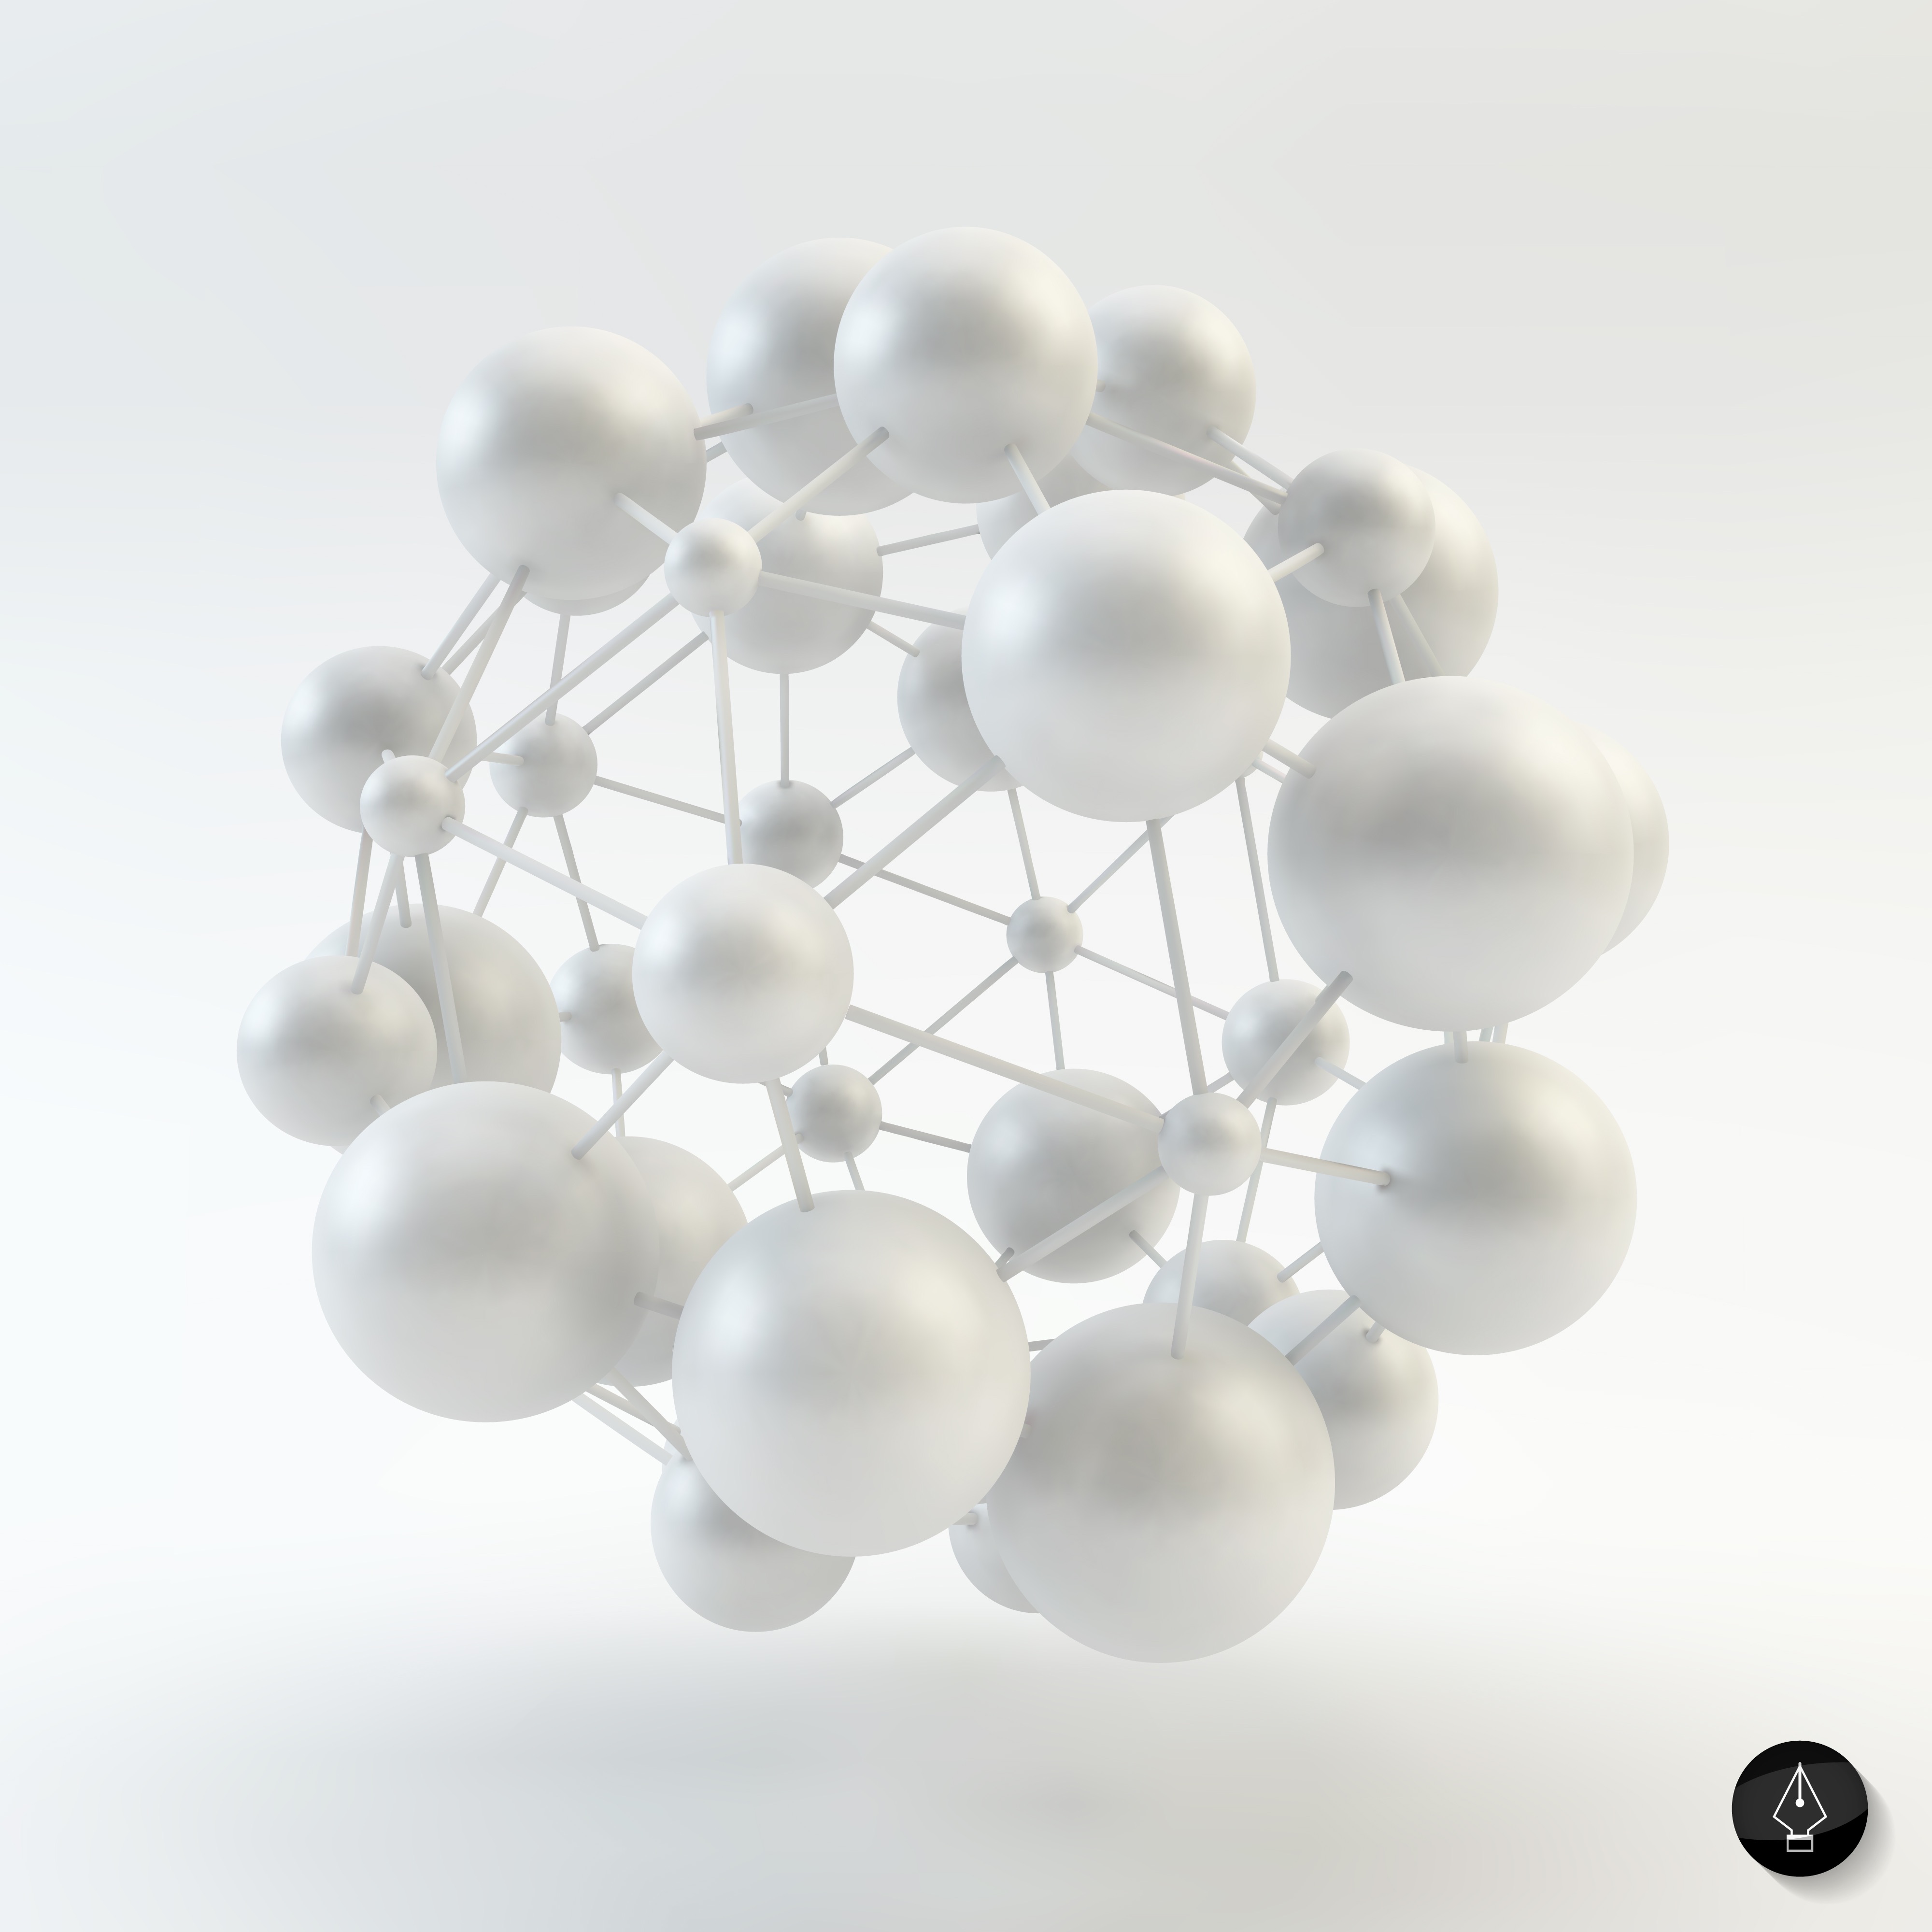 Vecteur de structure moléculaire d'ADN cellulaire en forme de boule abstraite